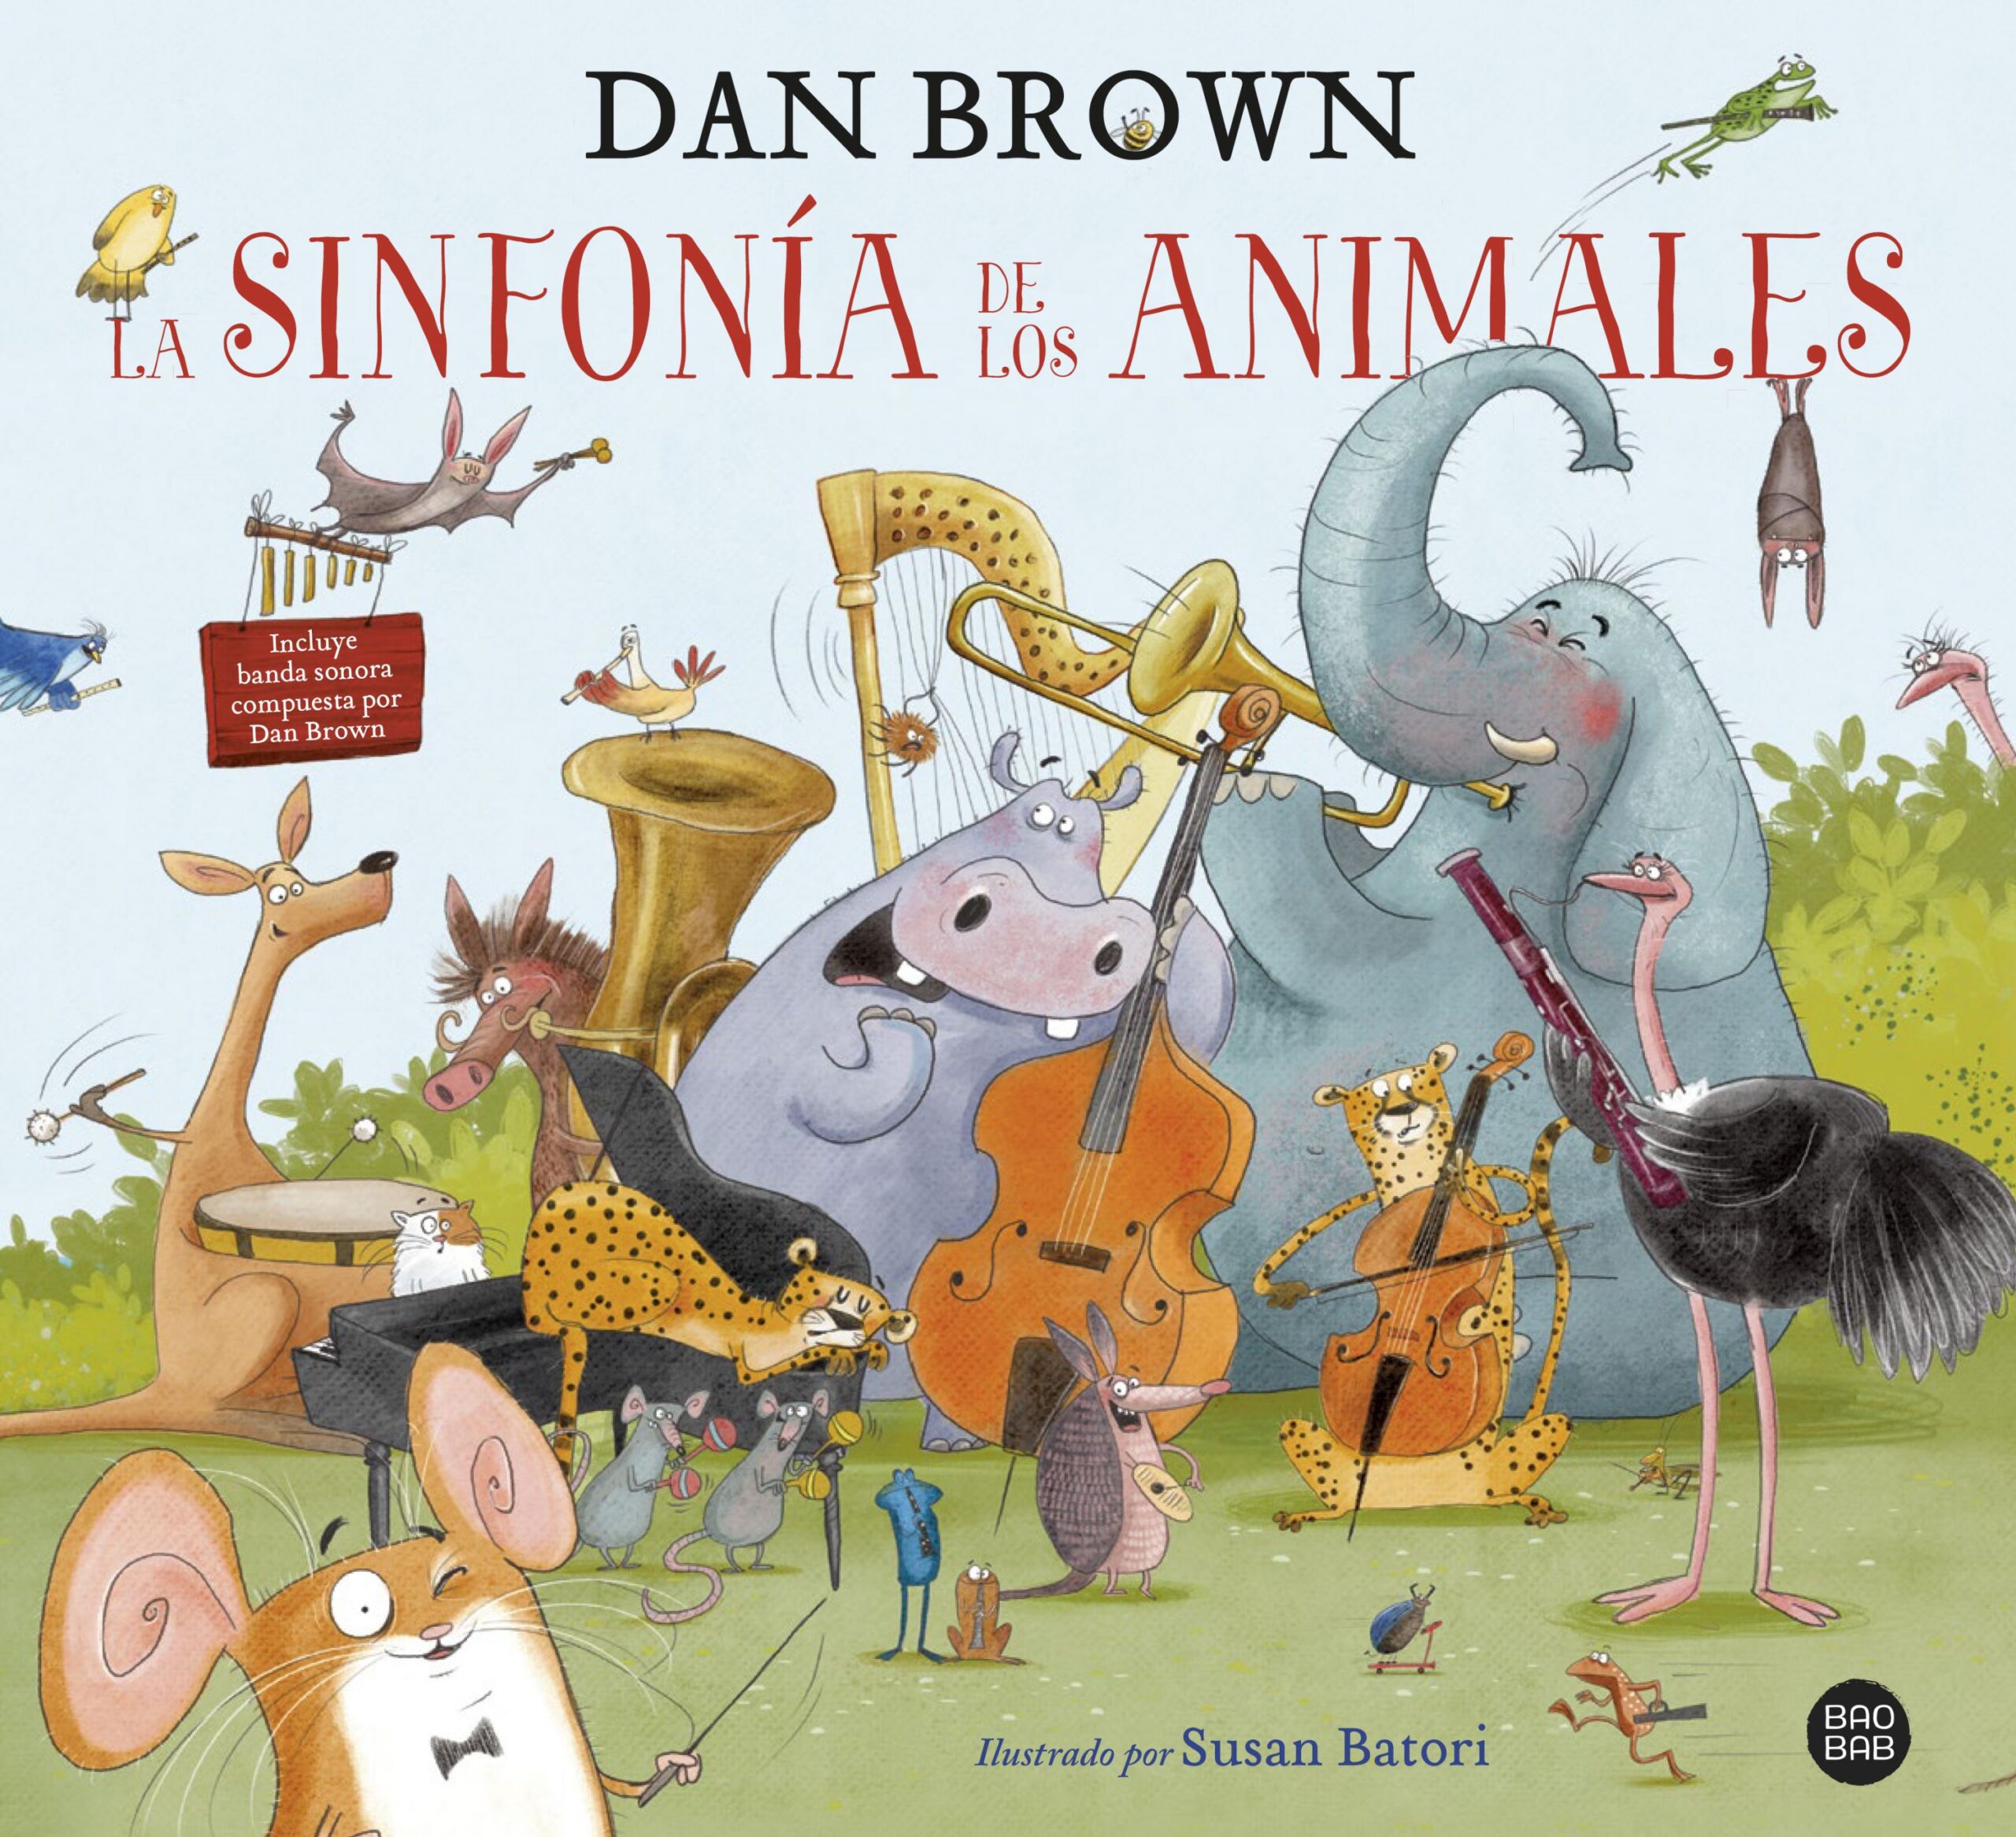 Dan Brown debuta en la literatura infantil con «La sinfonía de los animales»